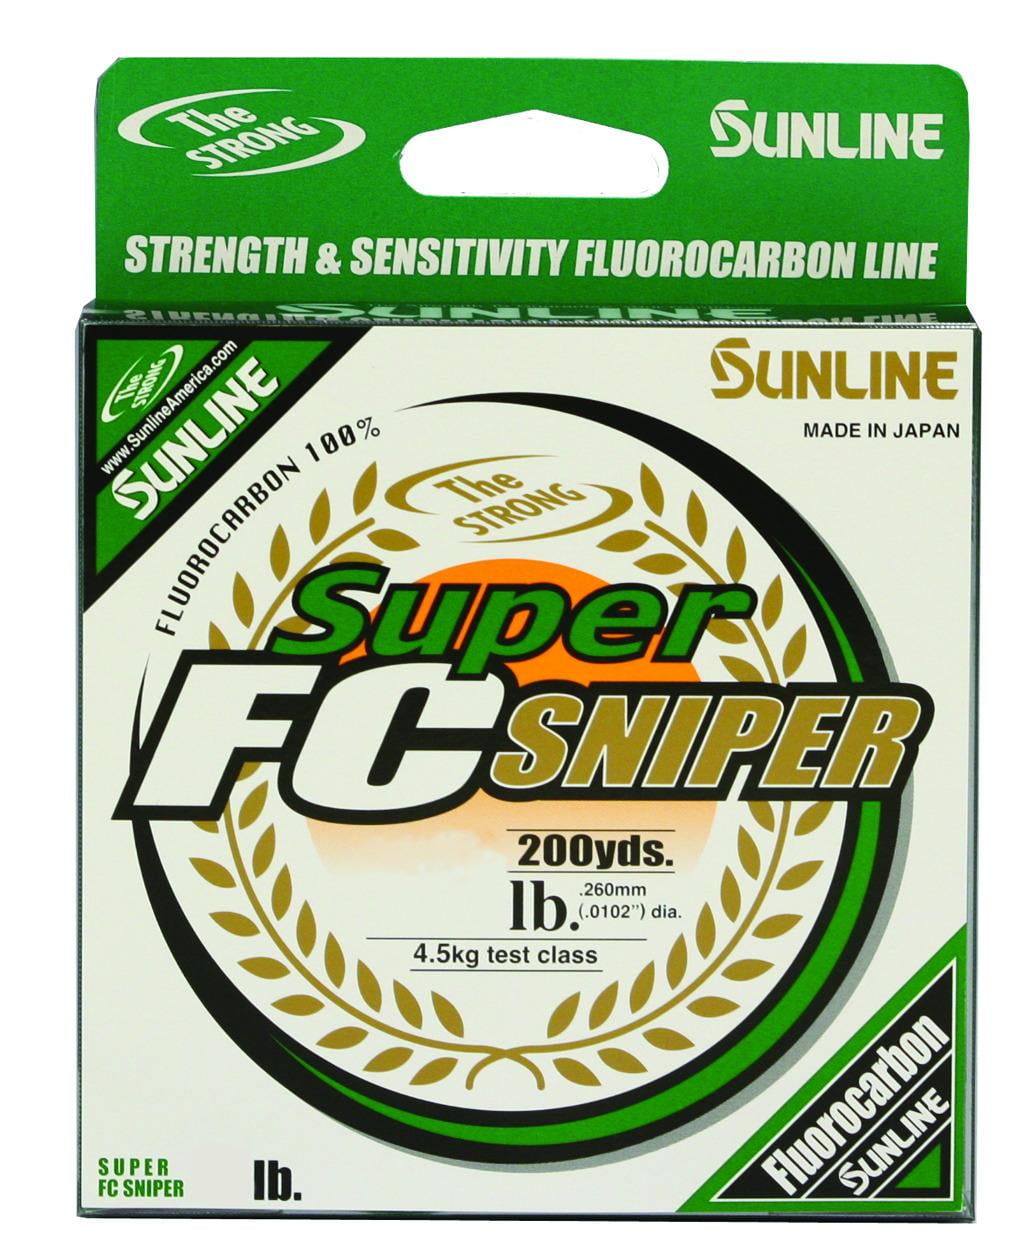 Sunline 63050346 Super FC Sniper Fluorocarbon Line Green 200 Yards